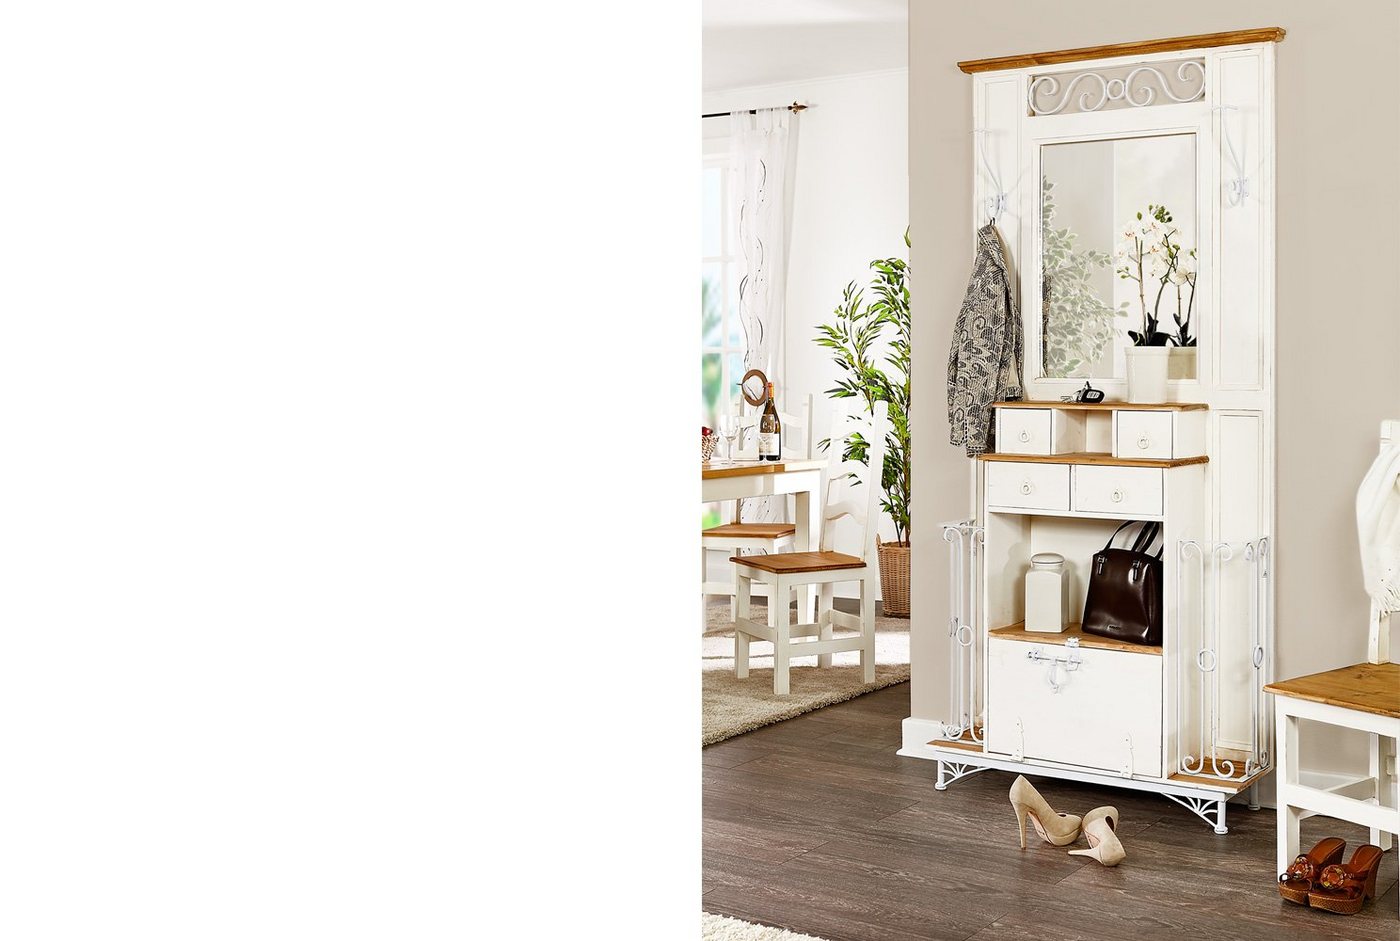 1a Direktimport Kompaktgarderobe Landhausstil Garderobe mit Spiegel - Pinie weiß natur Massivholz von 1a Direktimport